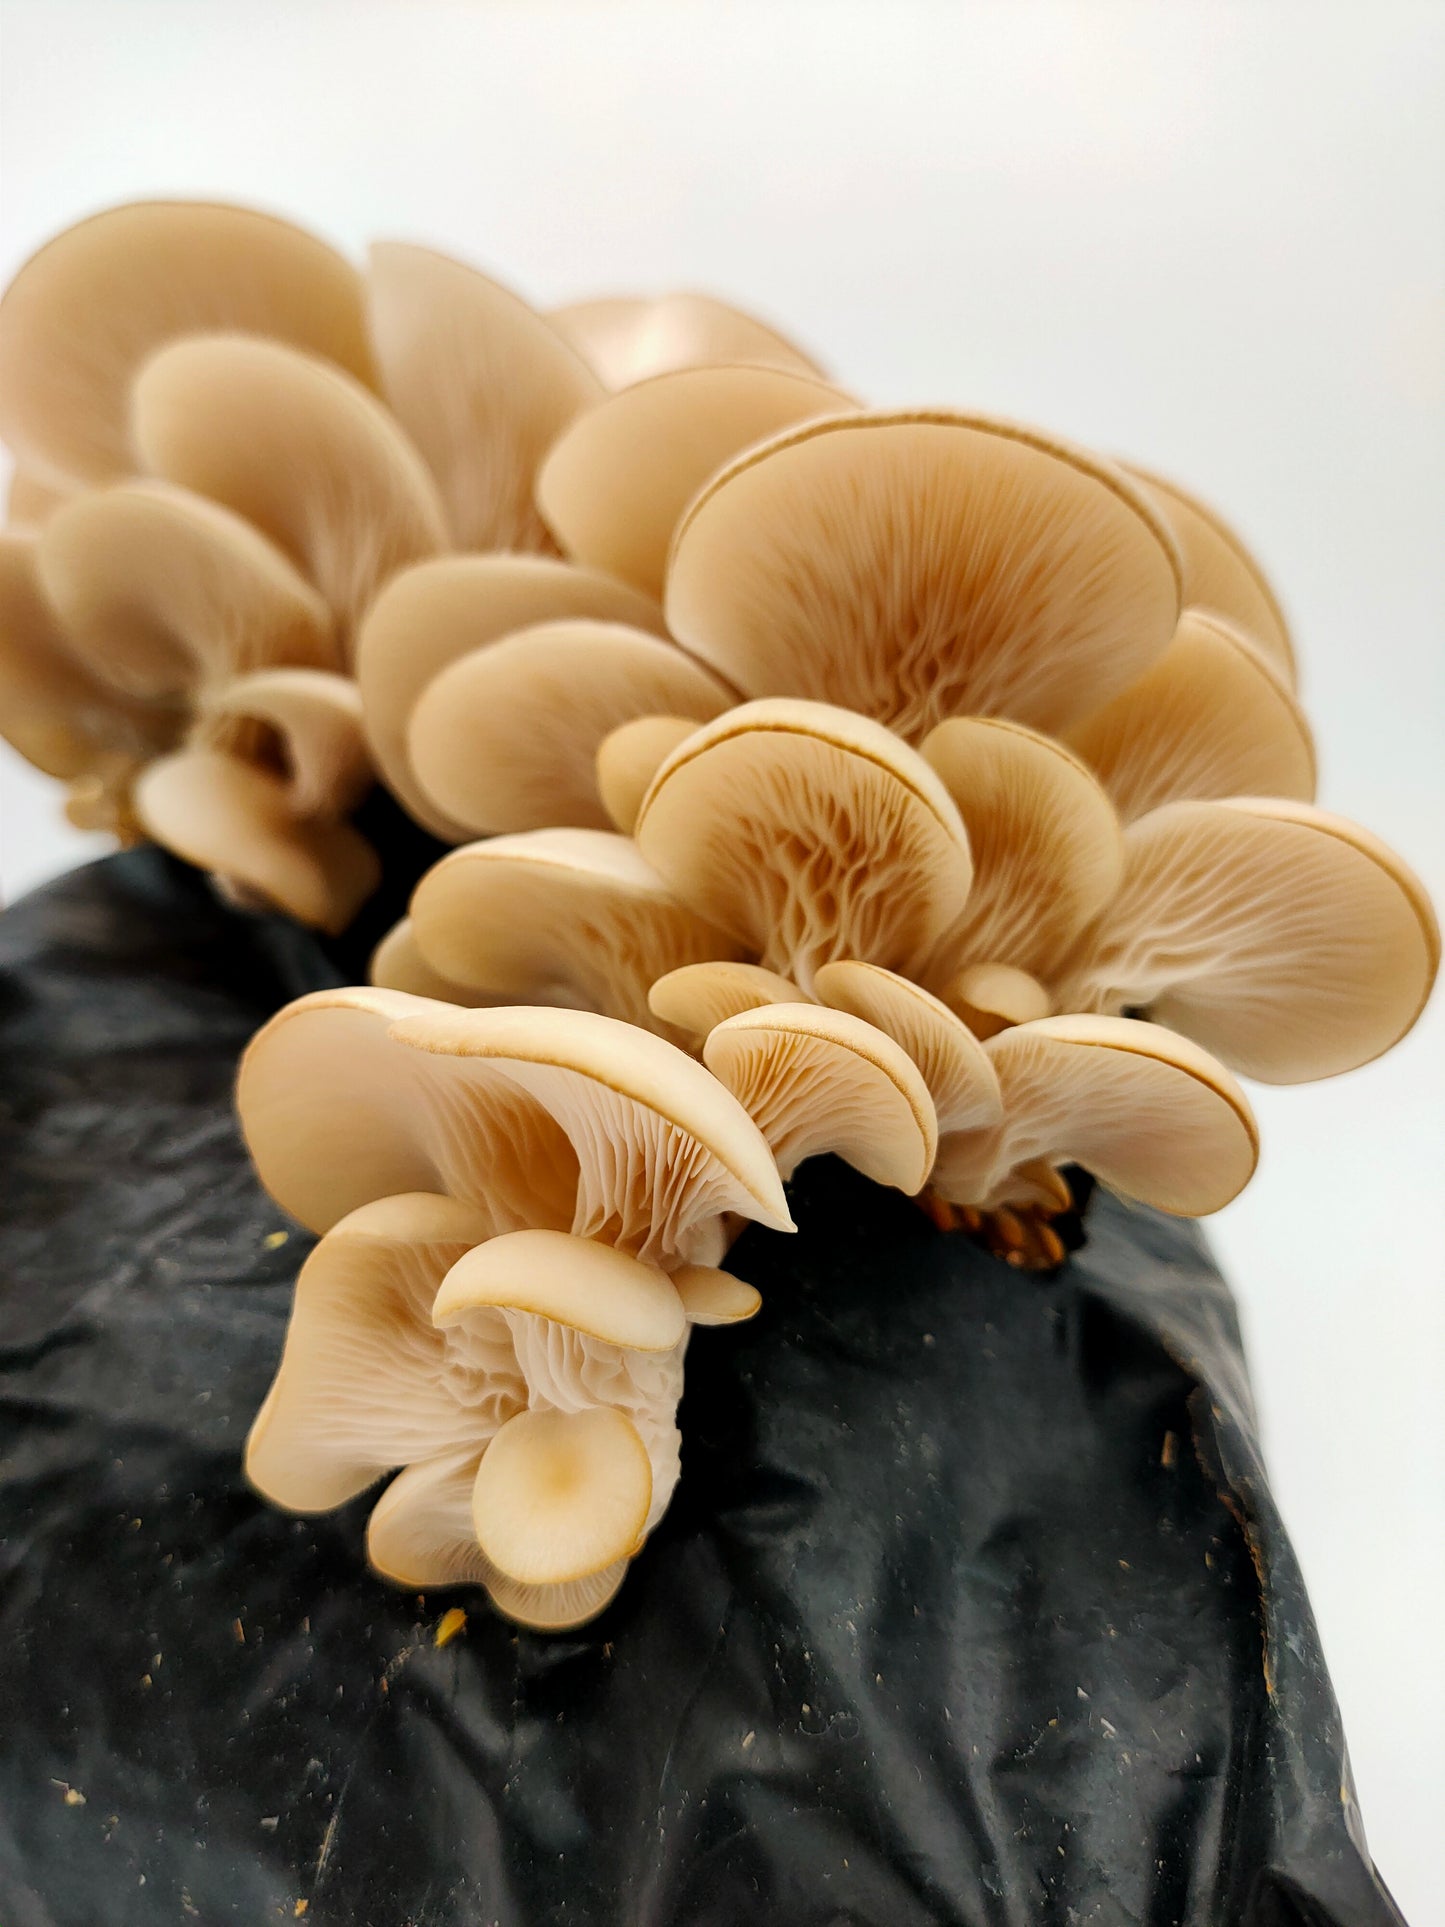 Mushroom Growing Kit - White Elm Oyster - Gift Option